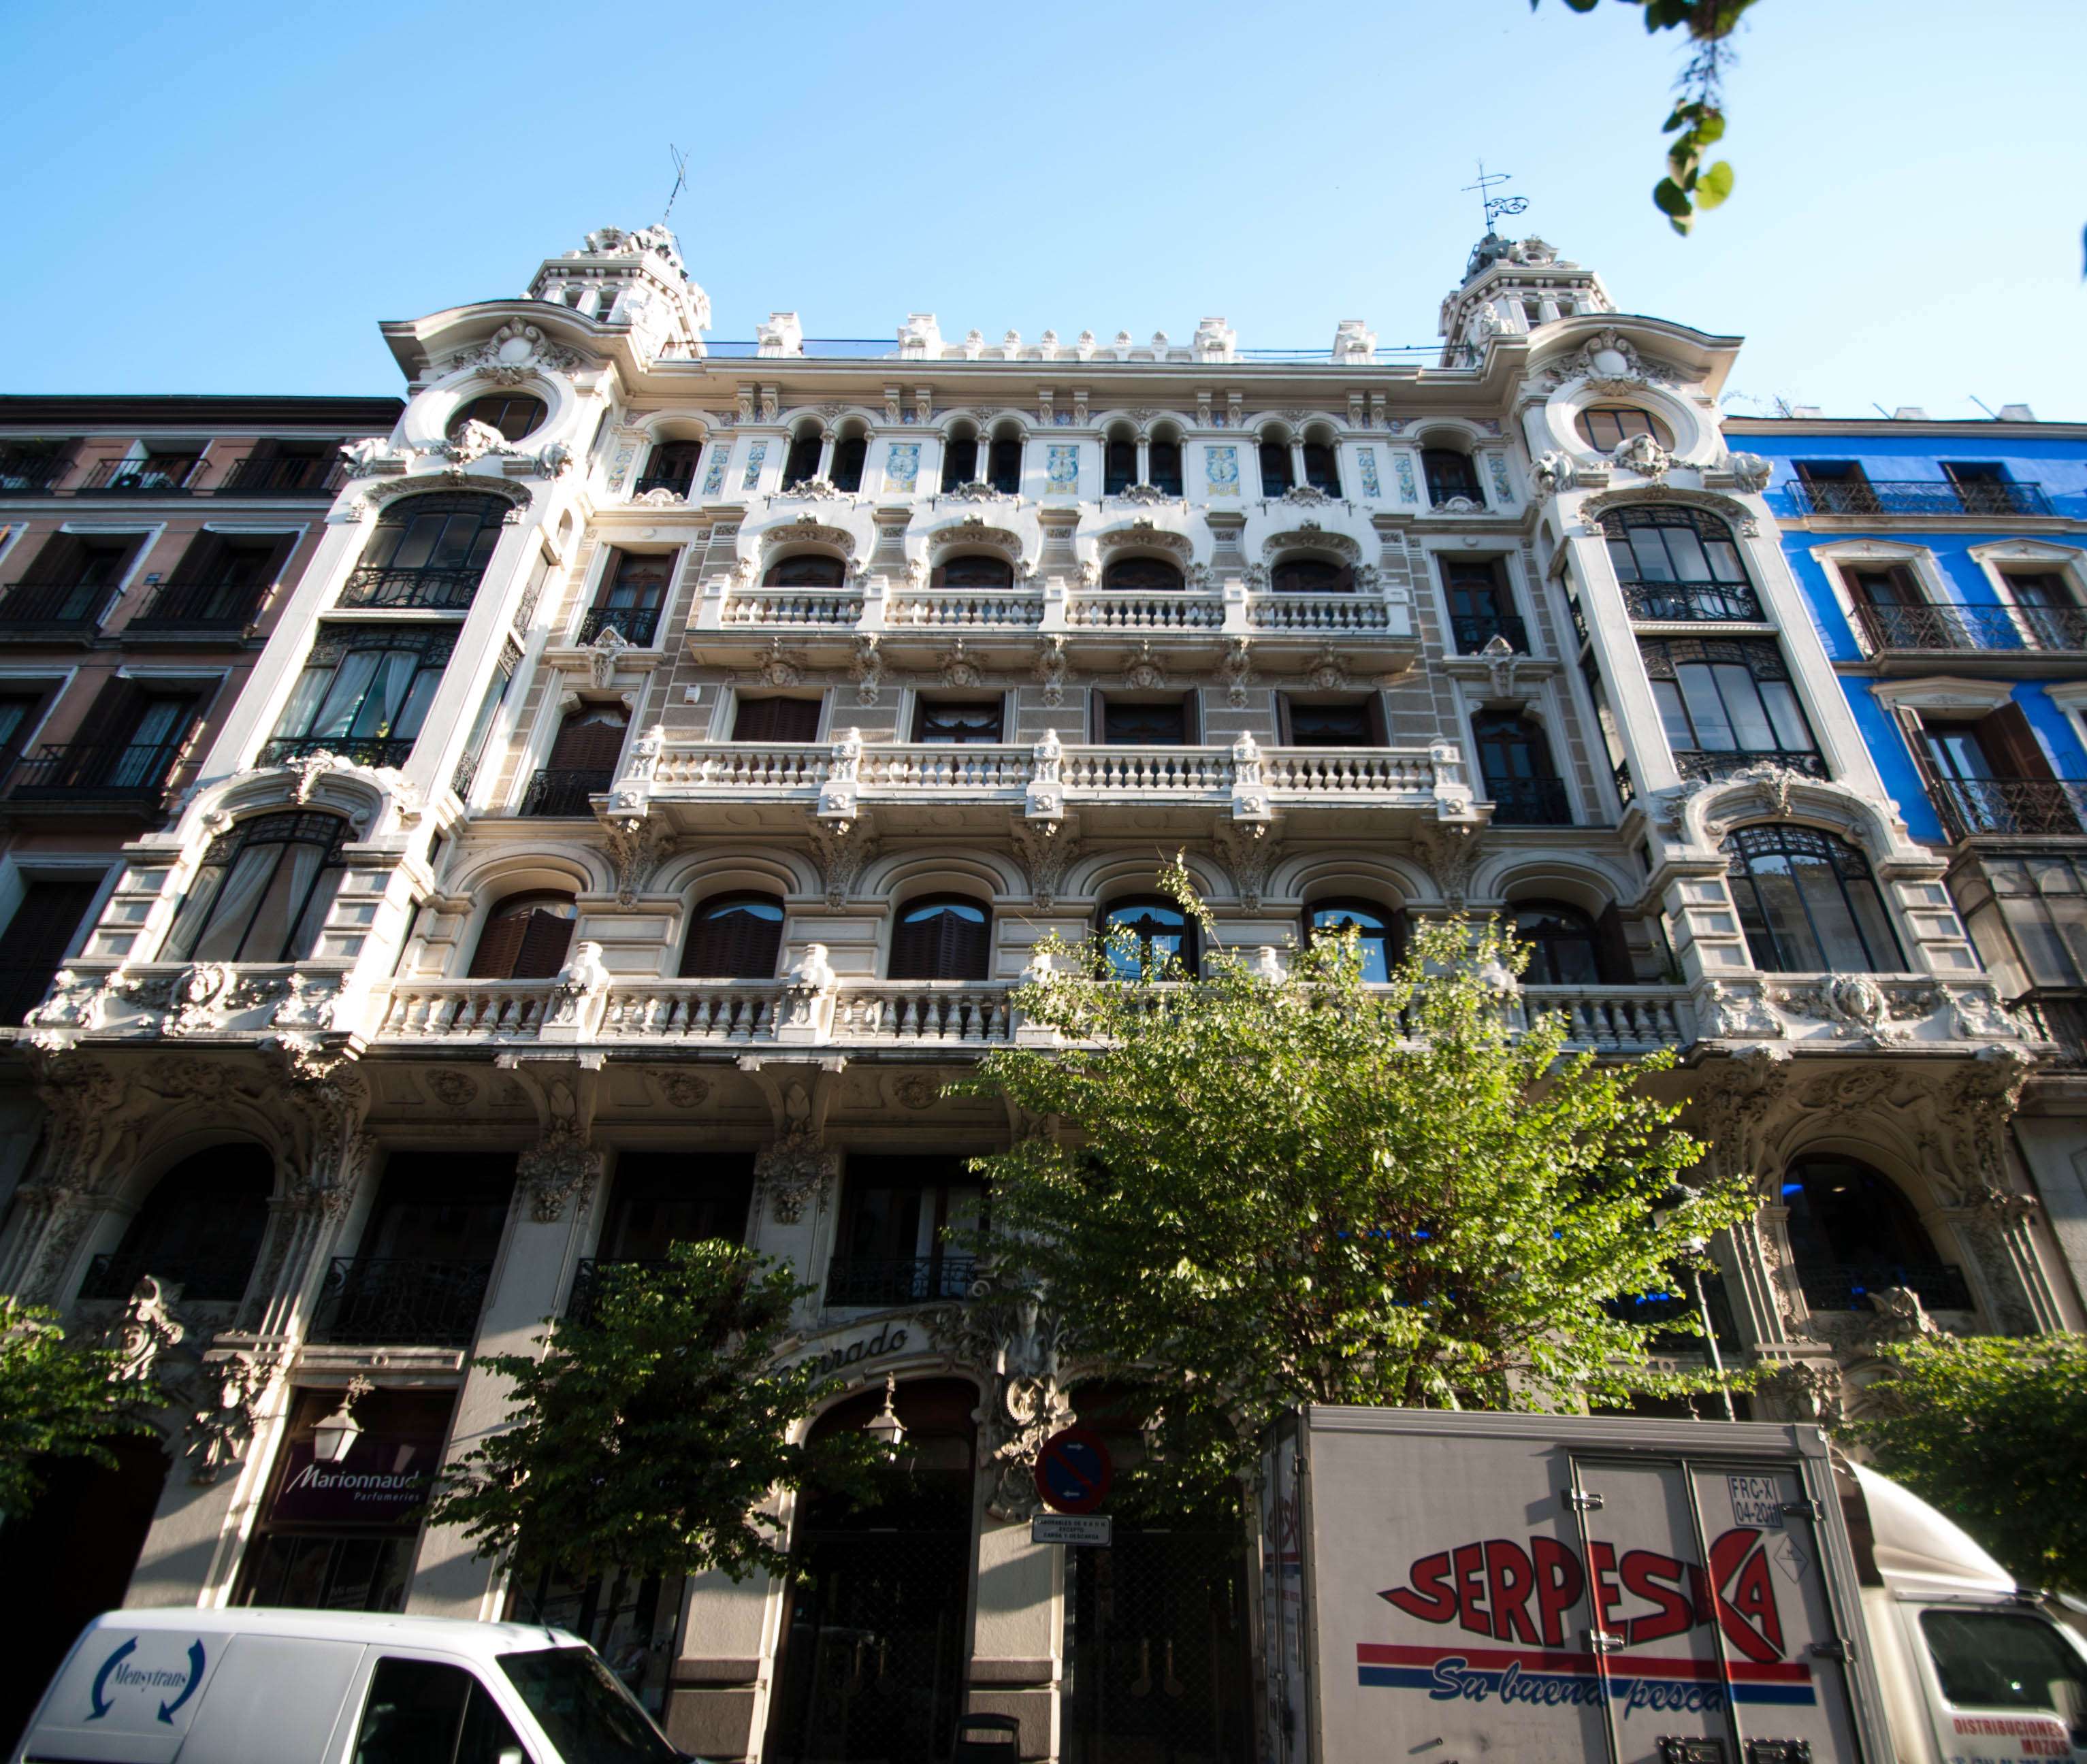 Paseos y Rutas por Madrid - Blogs of Spain - Un paseo modernista por la calle Mayor y aledaños (4)